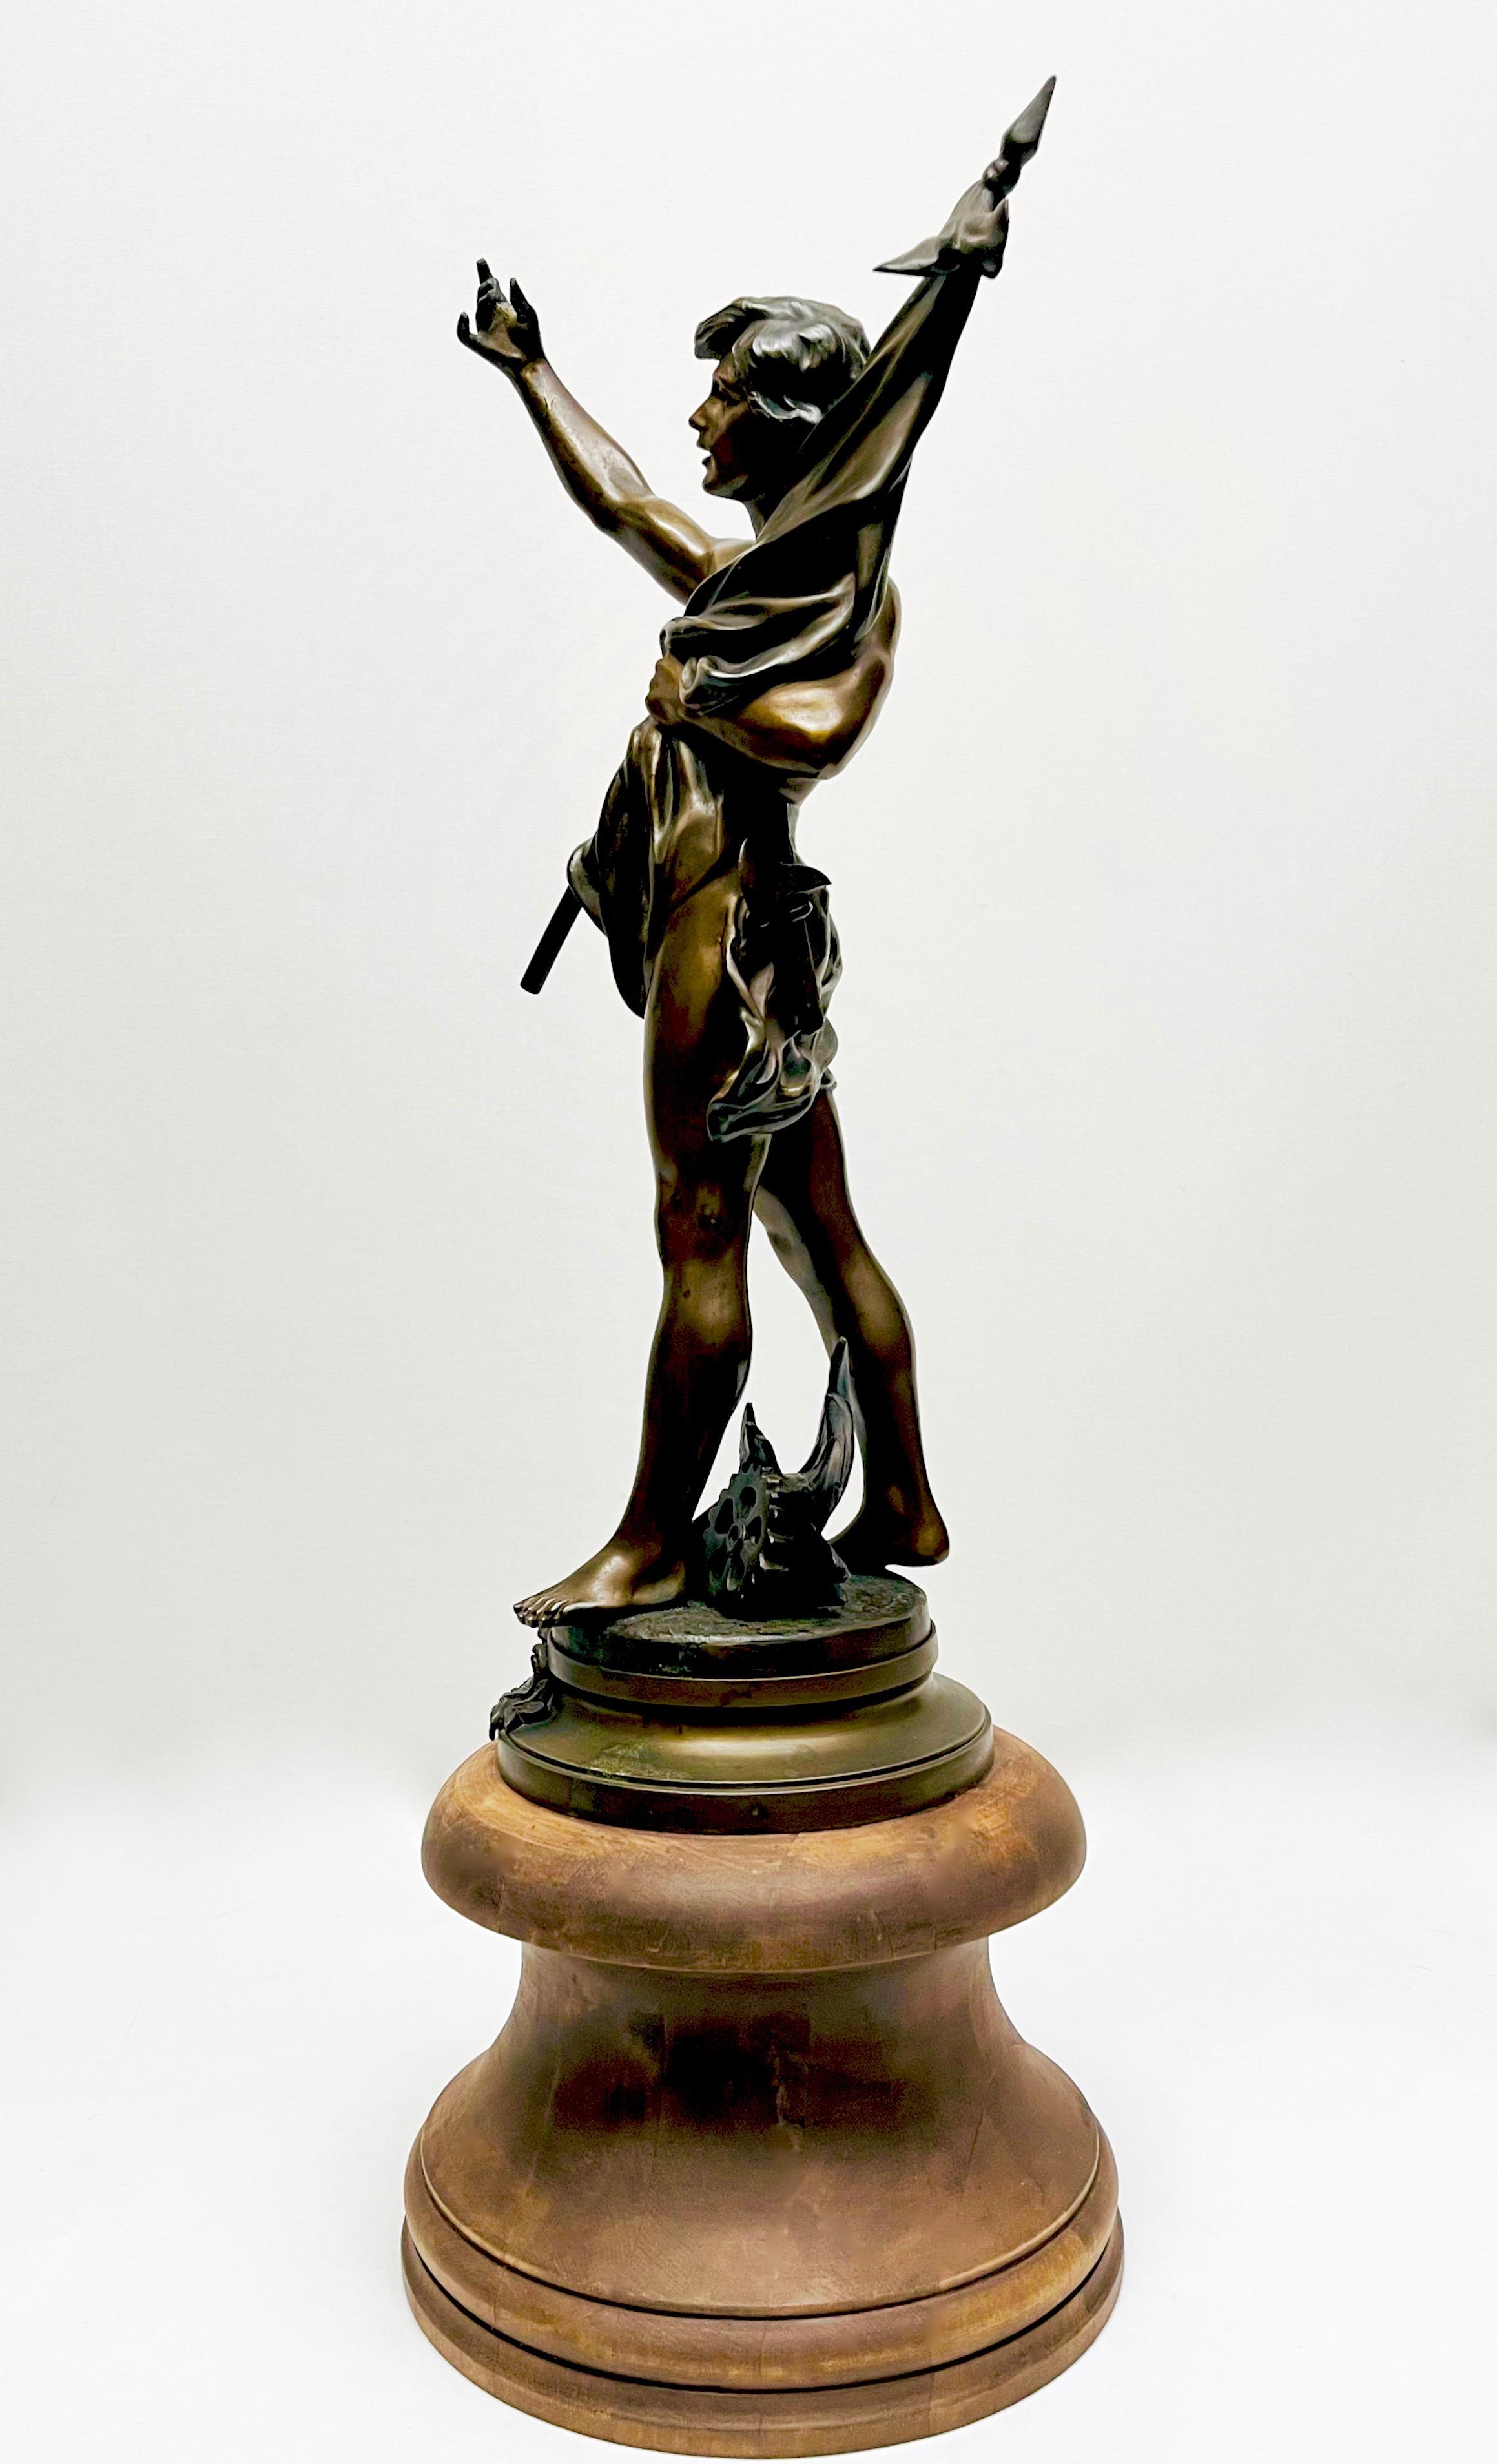 Praca i pokój- pełnoplastyczna rzeźba młodzieńca ze sztandarem wg rzeźbiarza Charsesa Perrona